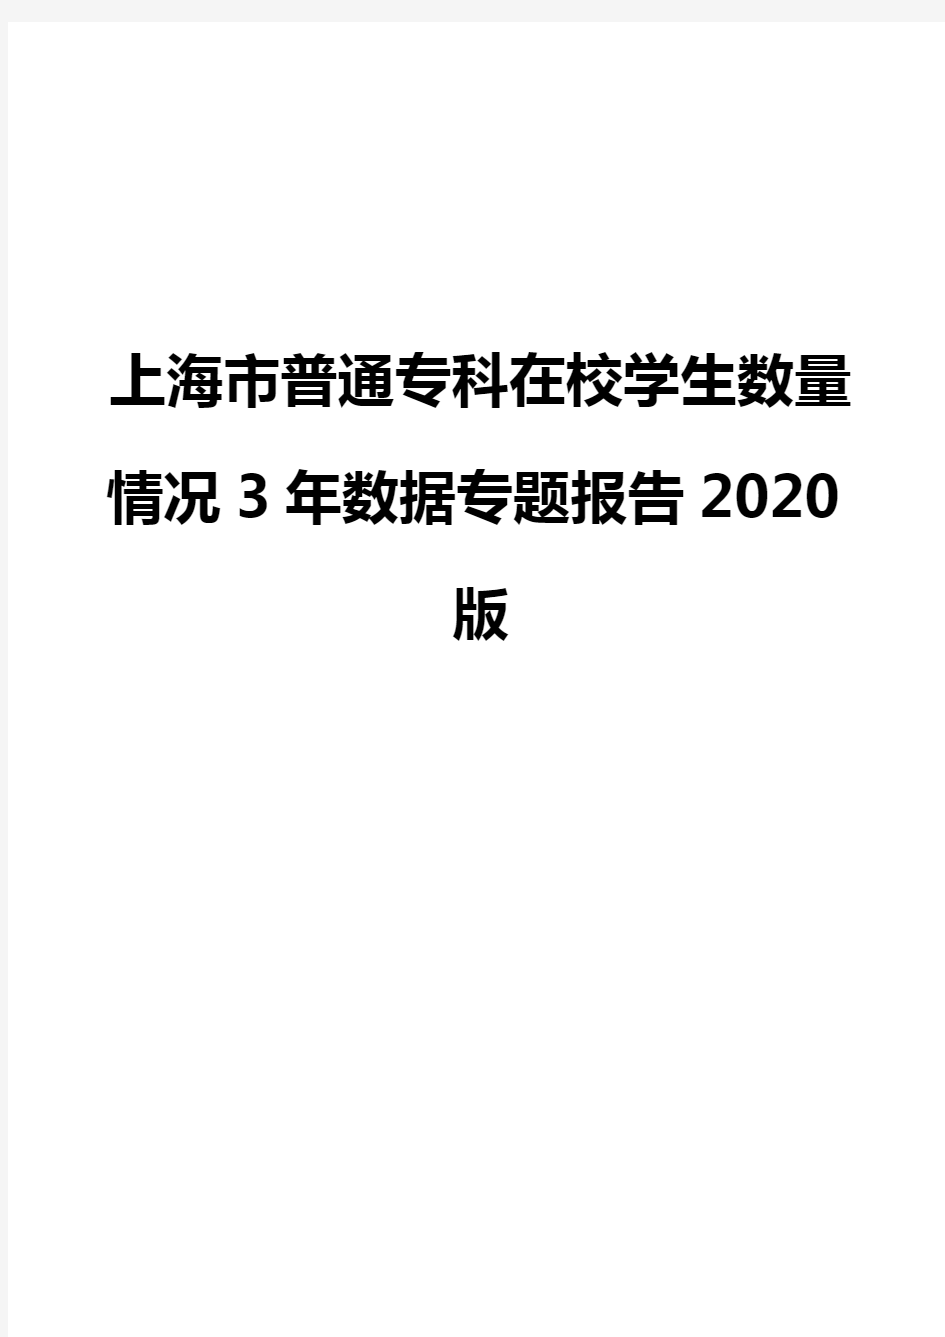 上海市普通专科在校学生数量情况3年数据专题报告2020版